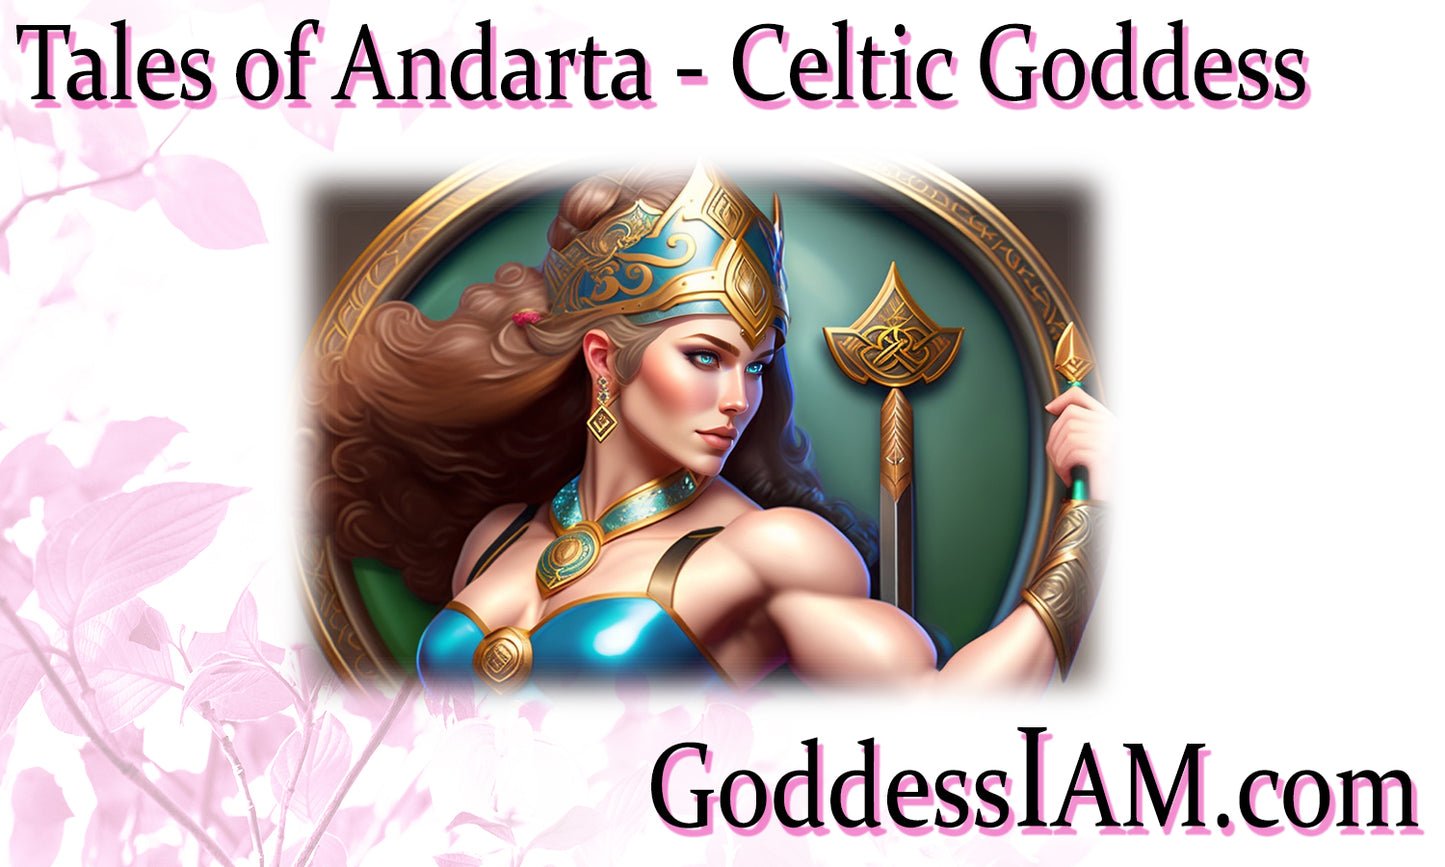 Tales of Andarta - Celtic Goddess